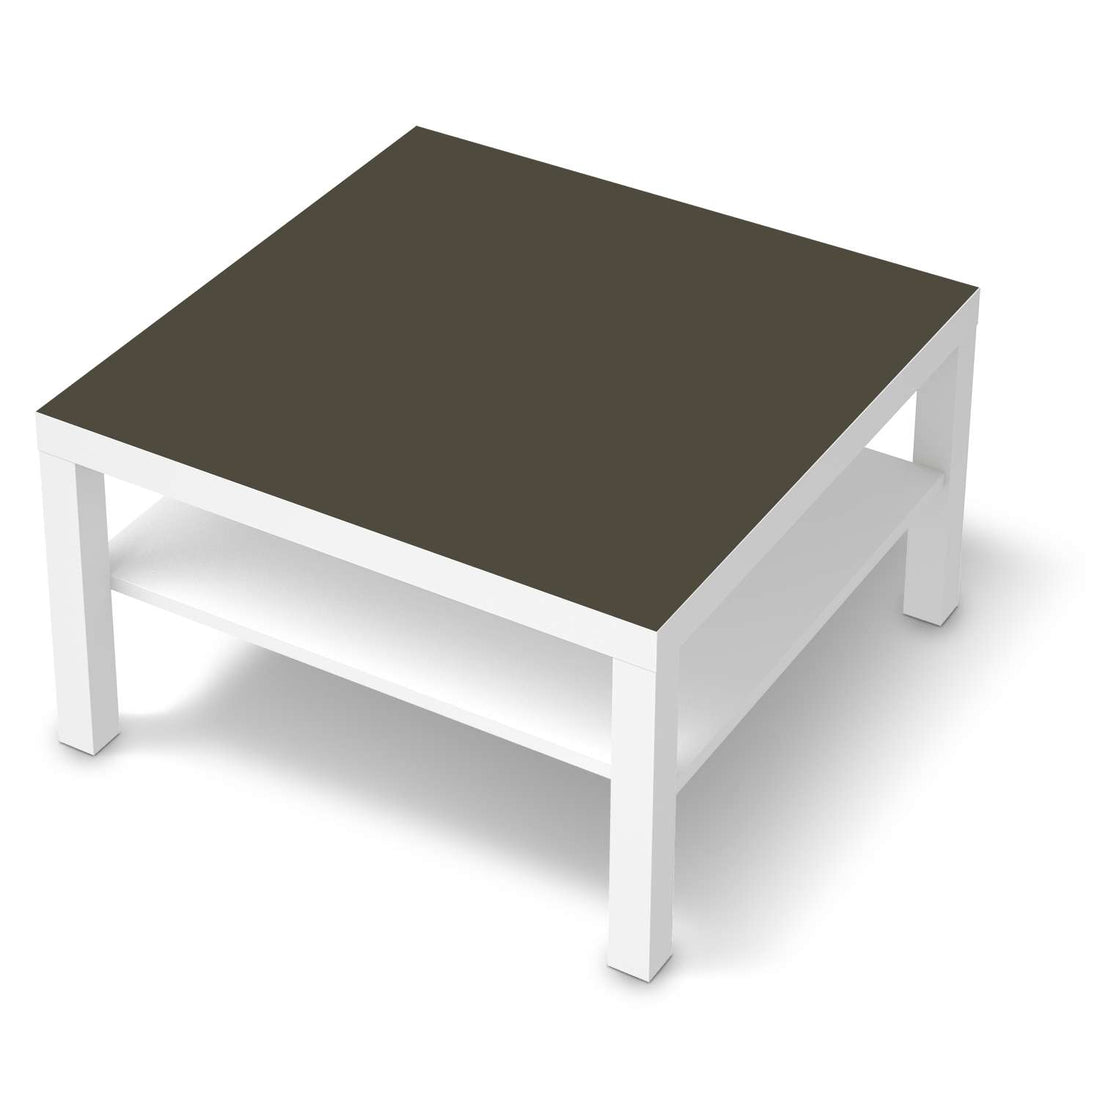 Selbstklebende Folie Braungrau Dark - IKEA Lack Tisch 78x78 cm - weiss